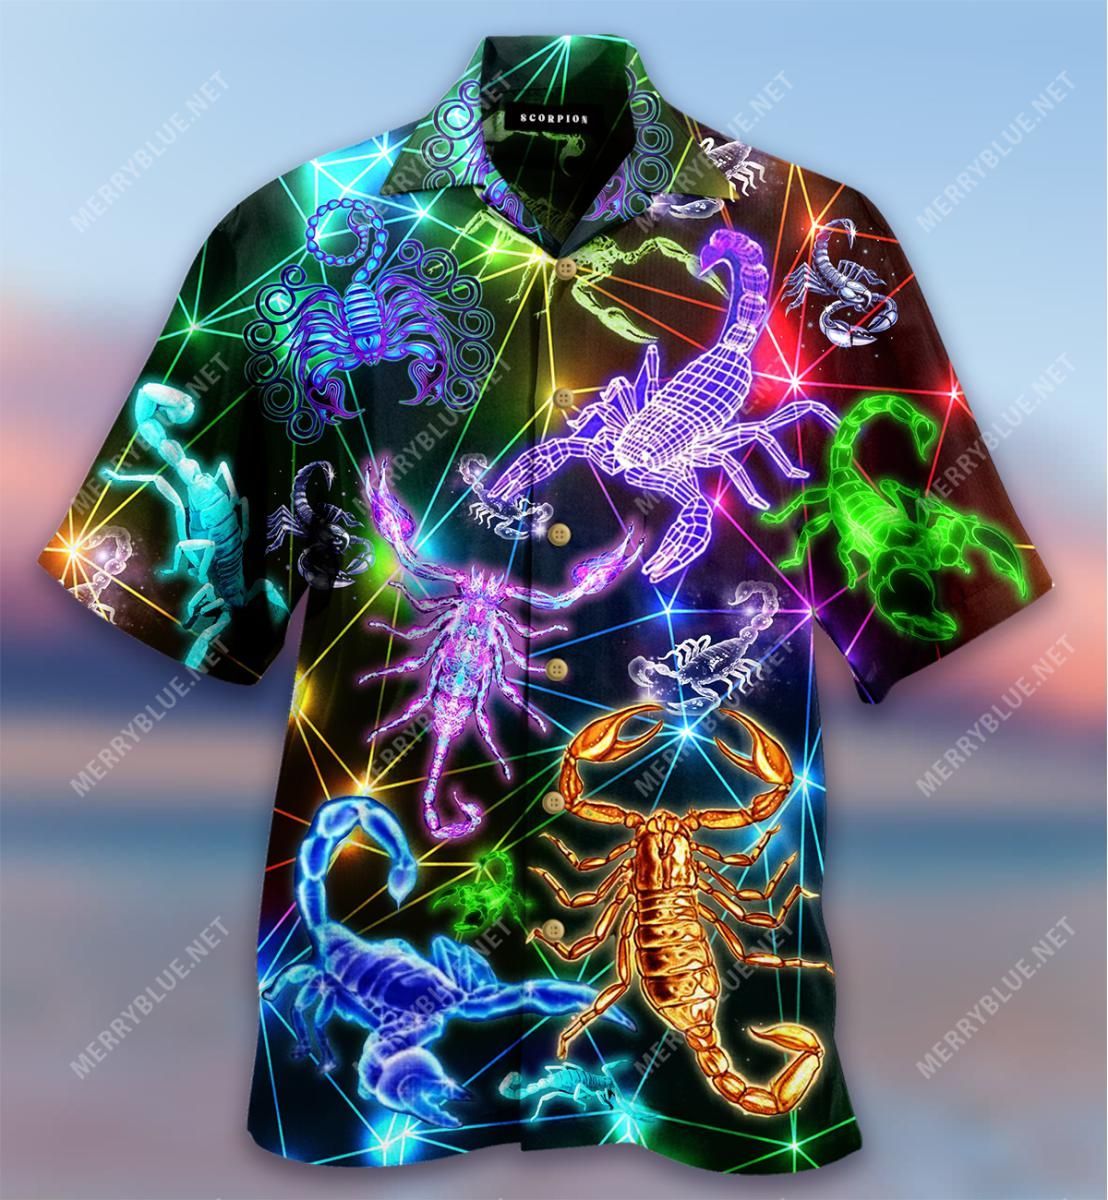 Glowing Scorpion Aloha Hawaiian Shirt Colorful Short Sleeve Summer Beach Casual Shirt For Men And Women